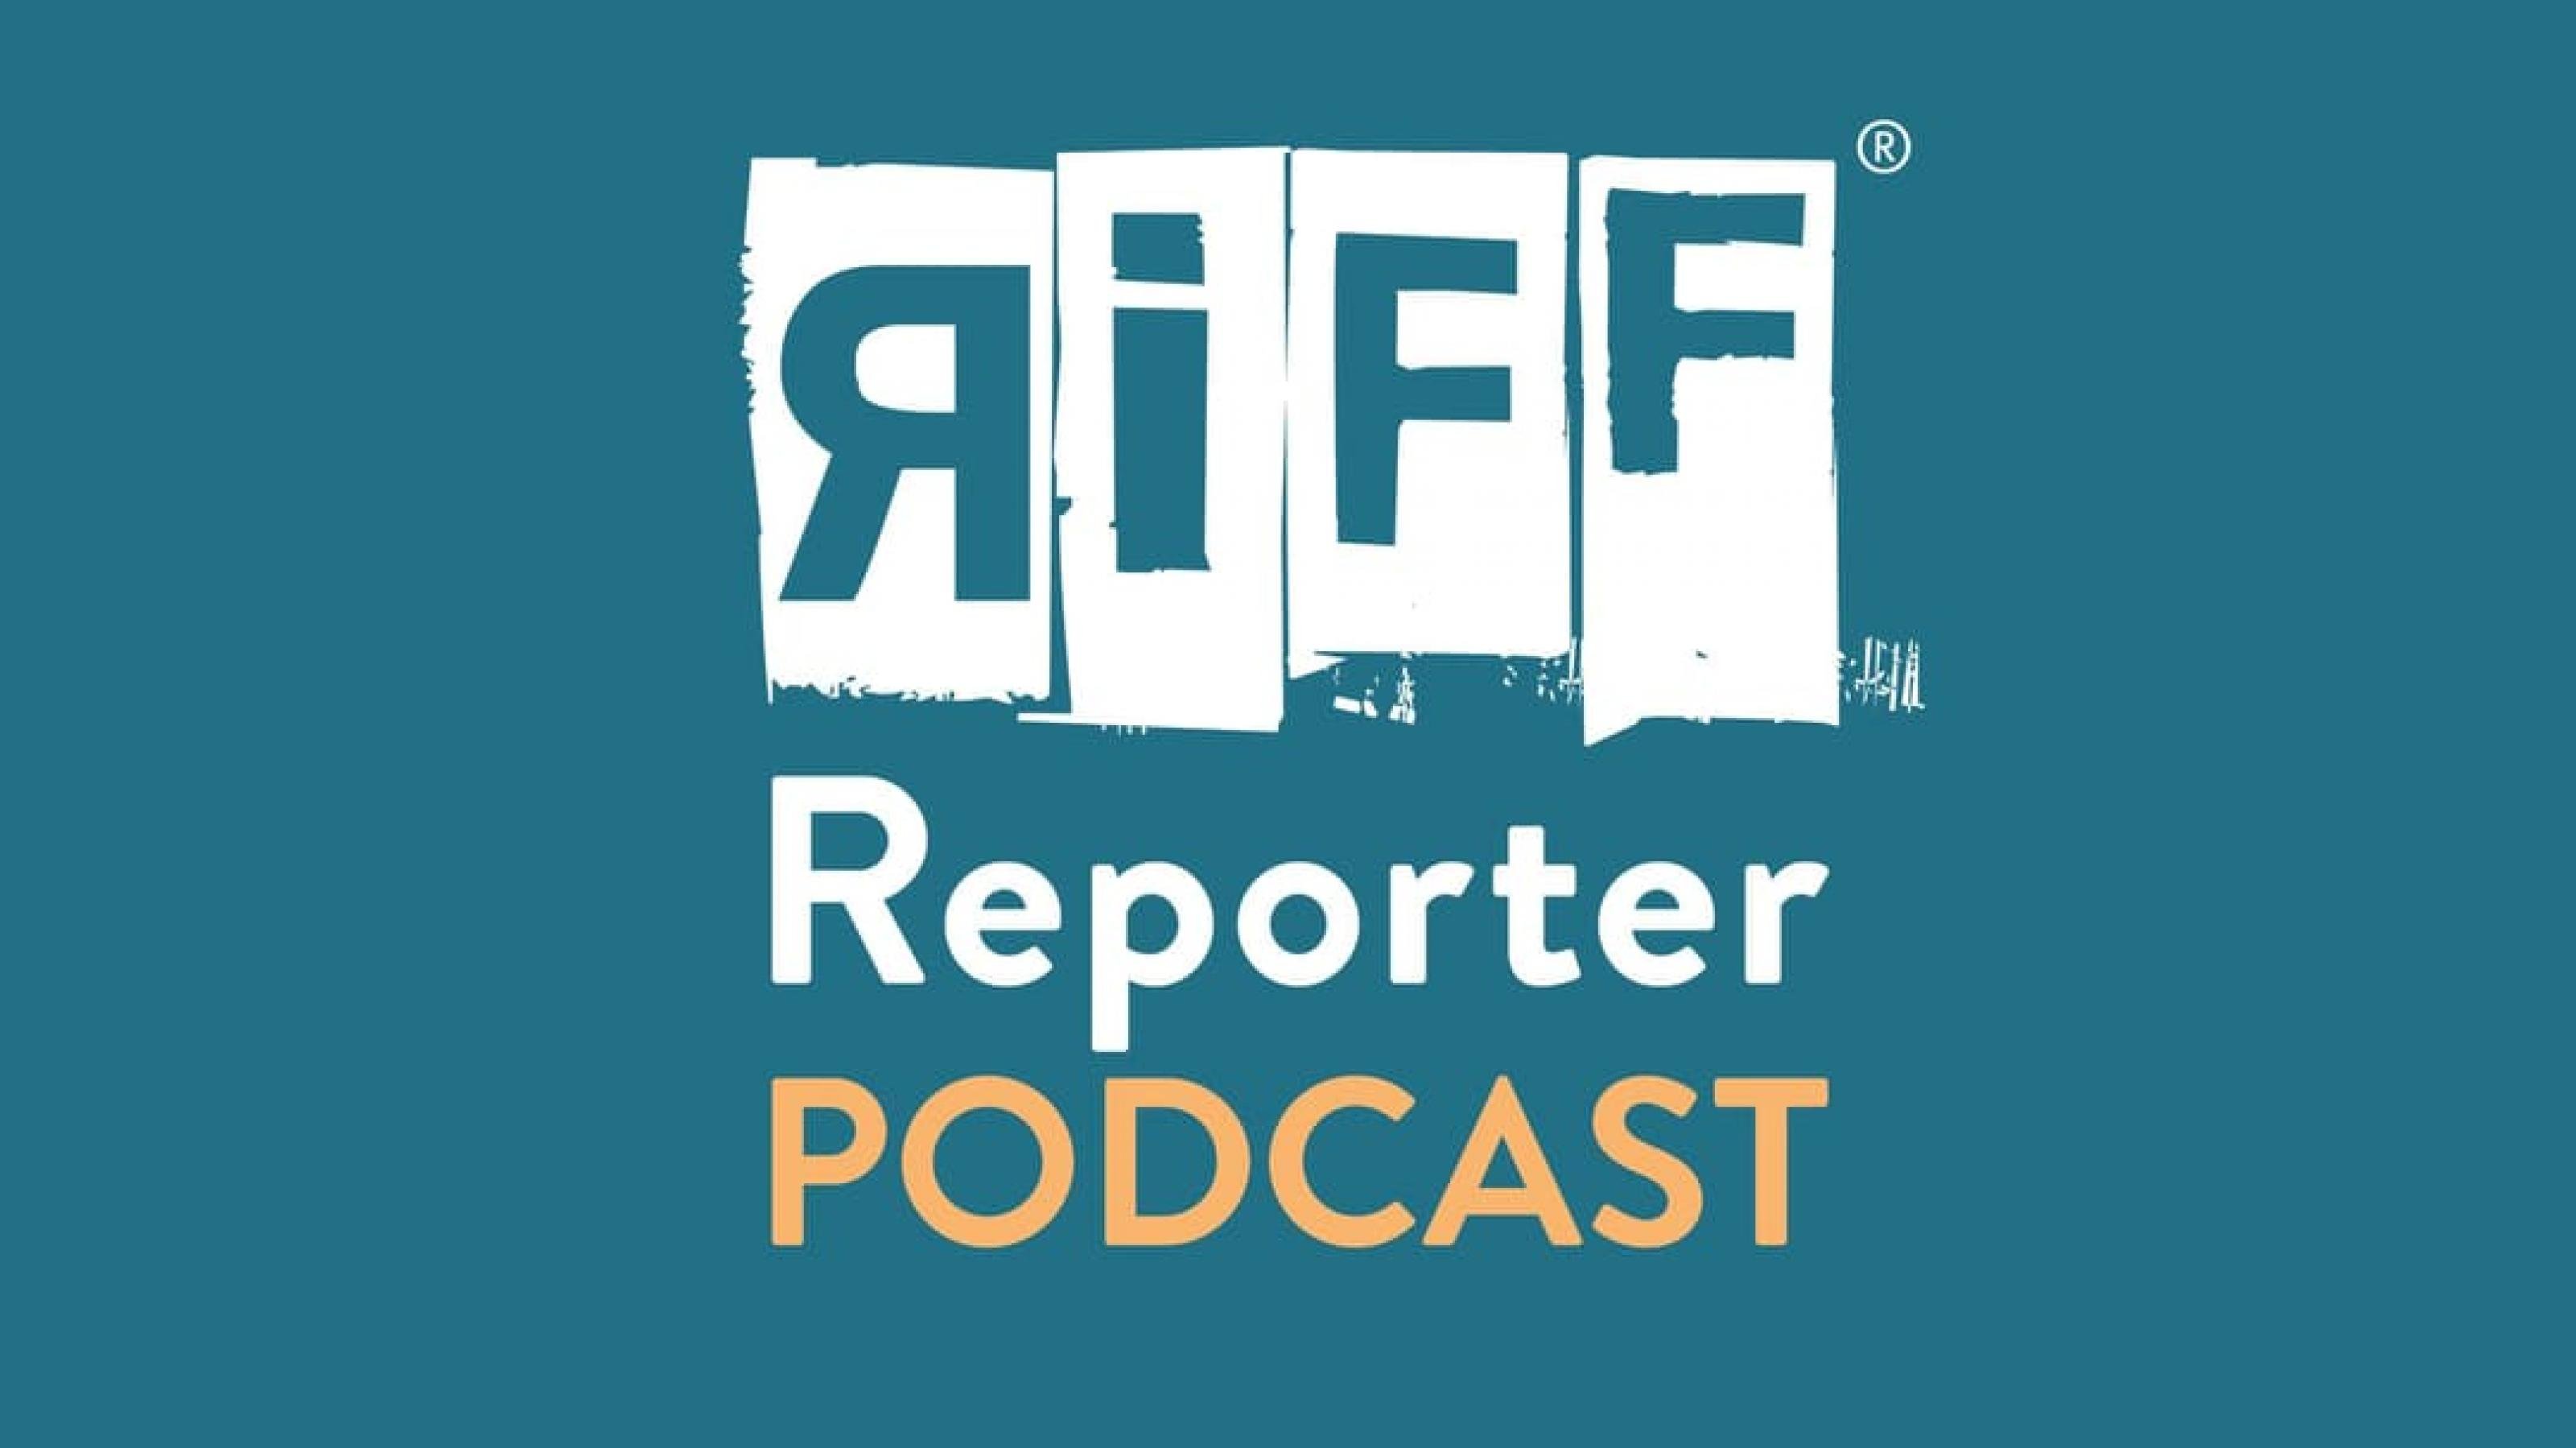 Das Logo des Riffreporter Podcast vor grünem Hintergrund